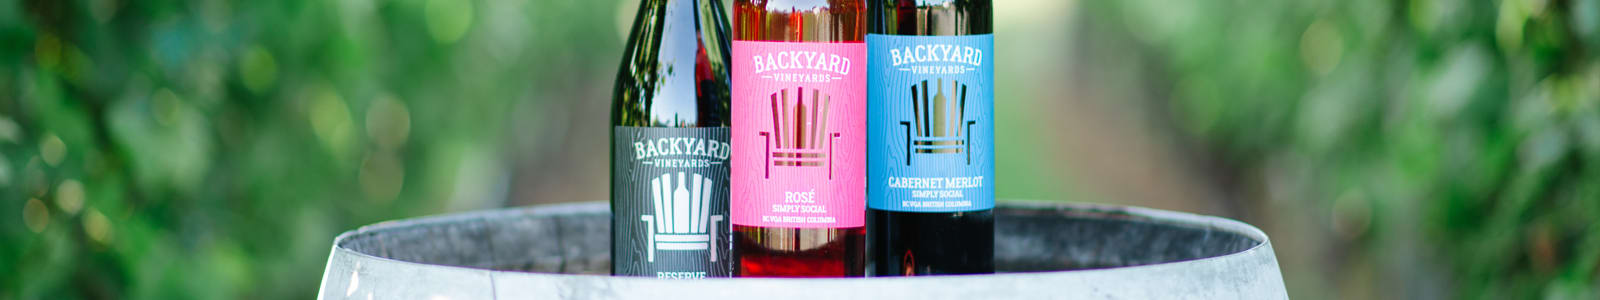 Careers at Backyard Vineyards